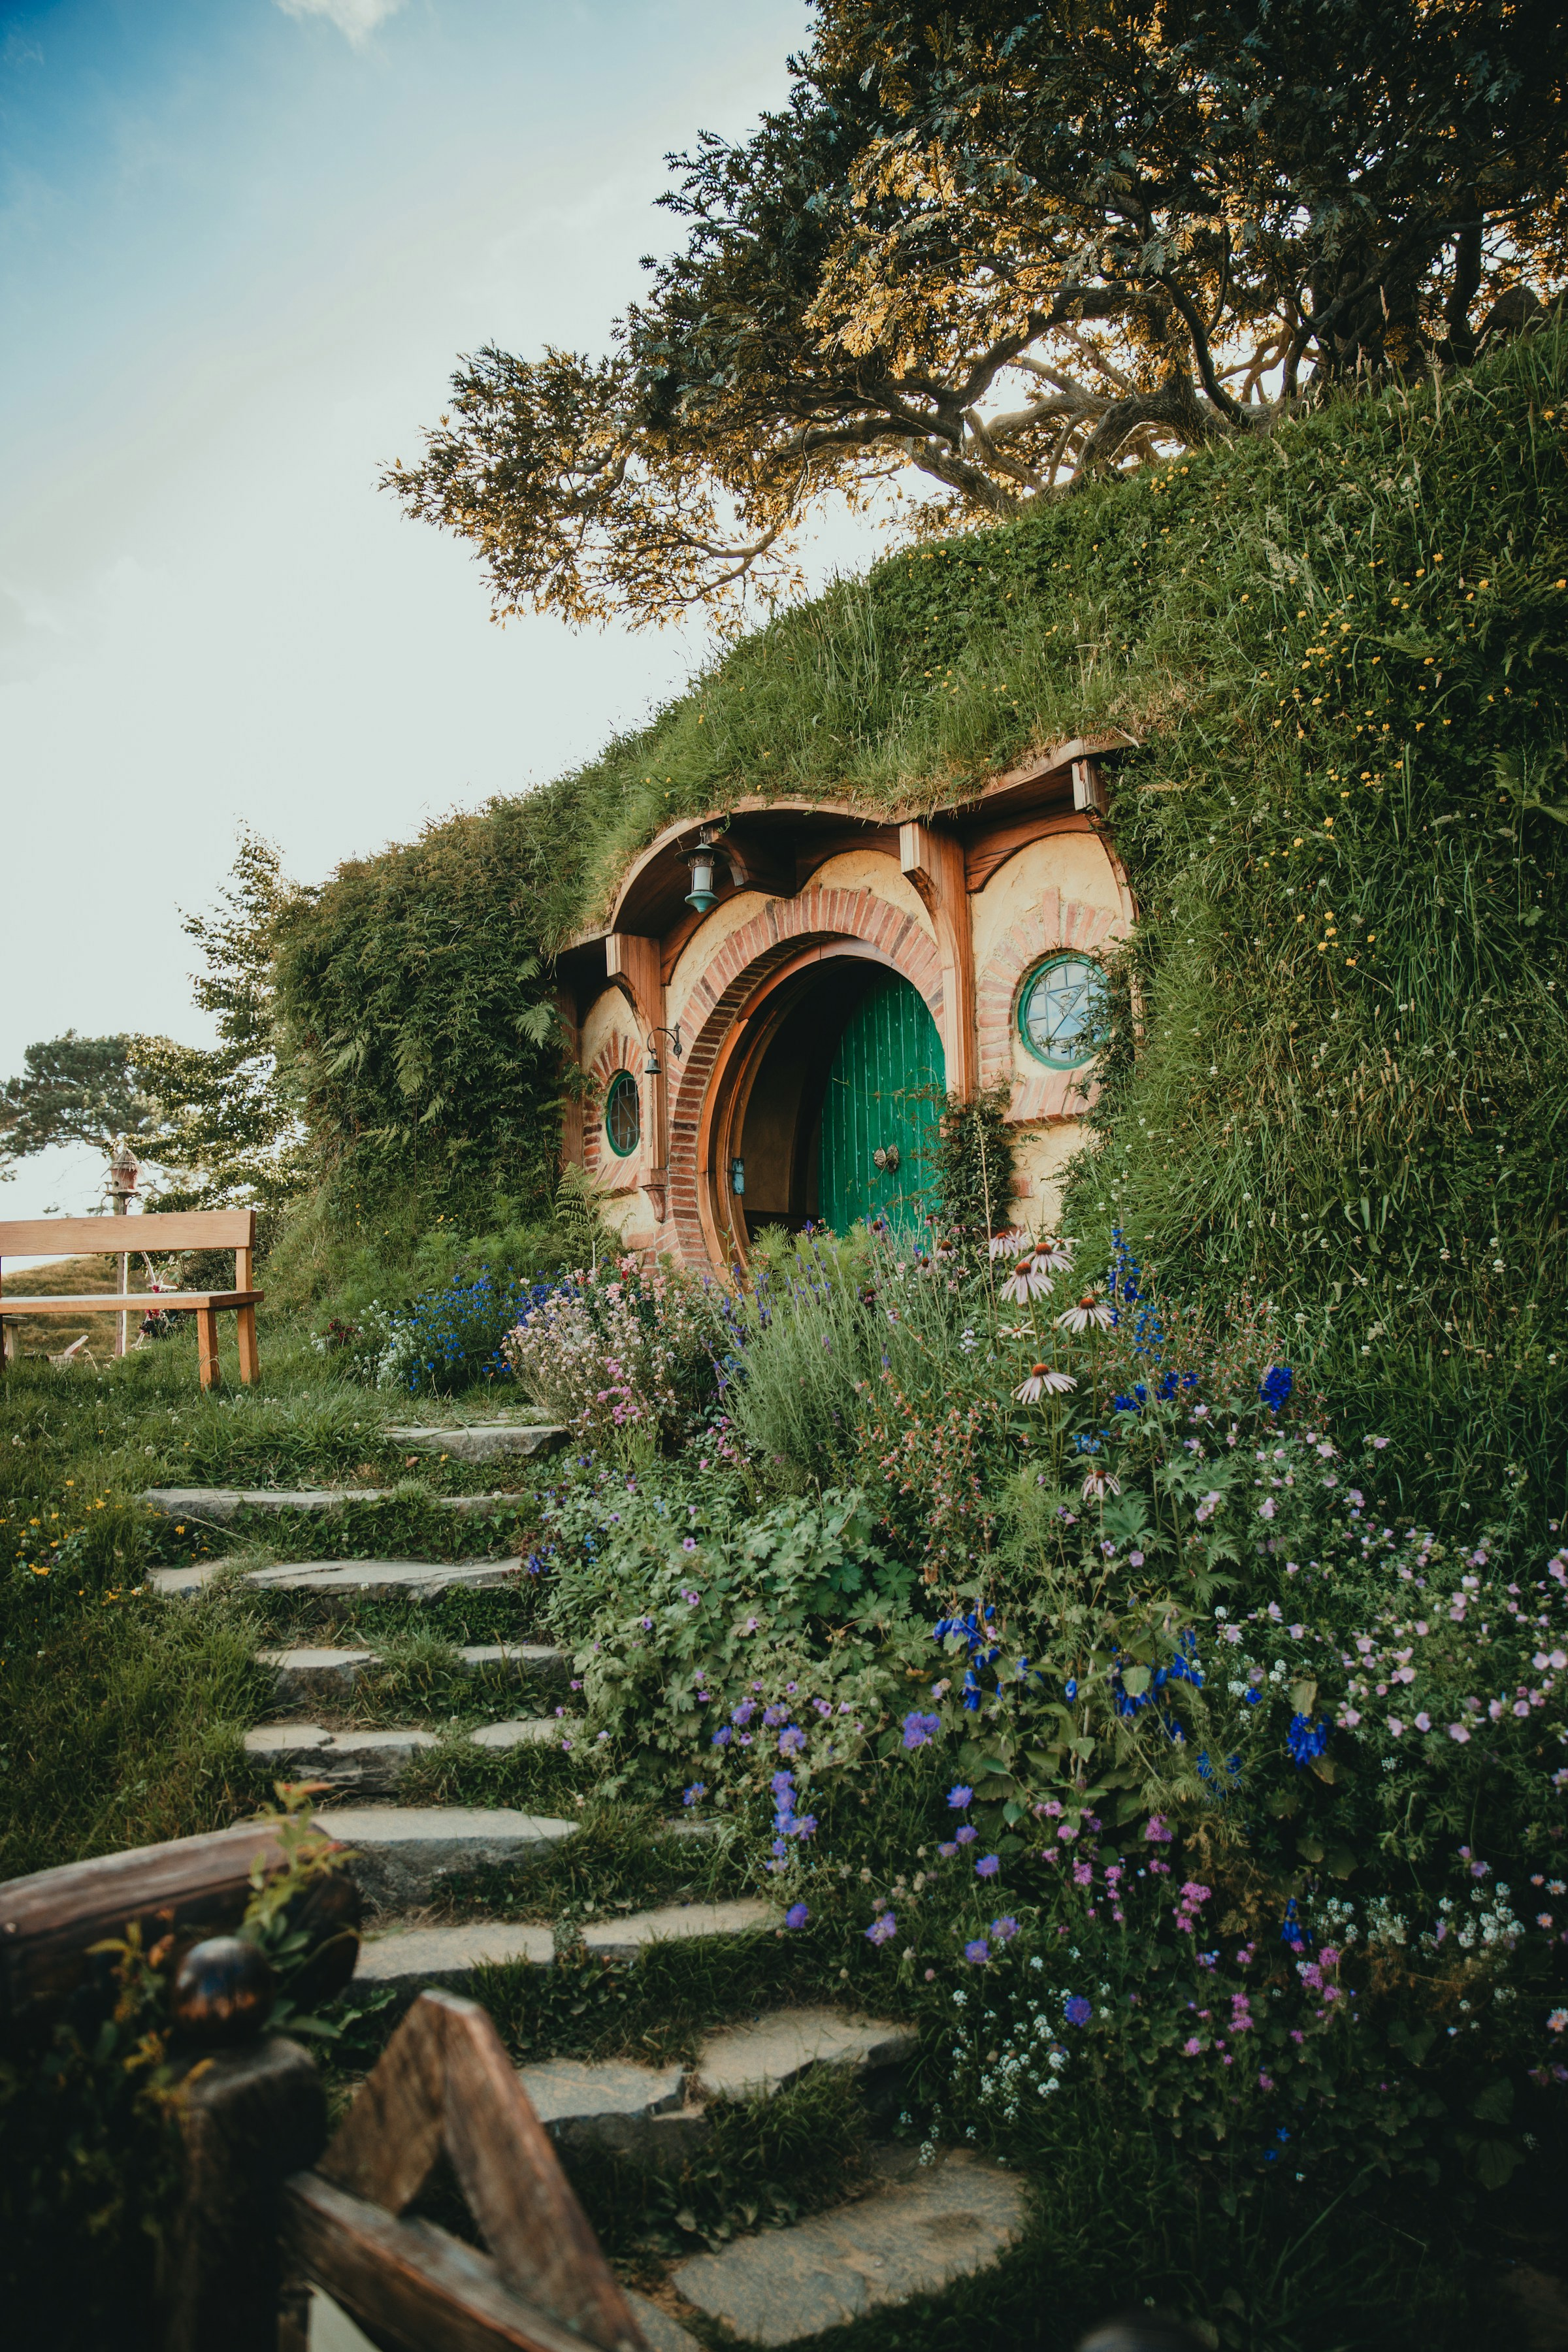 Garden and round door into a hobbit house